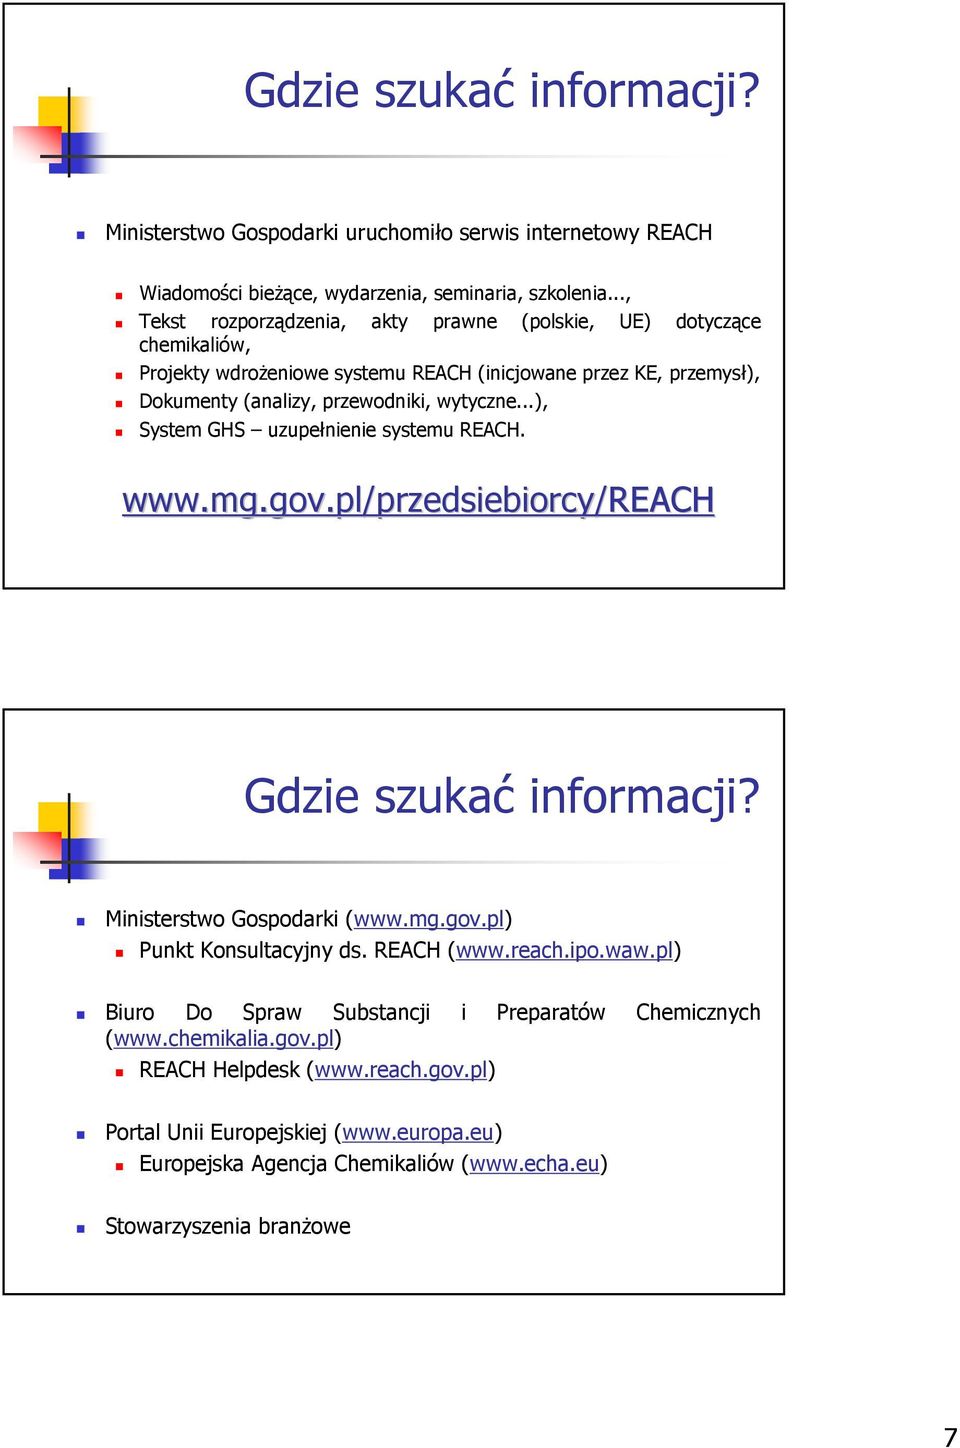 ..), System GHS uzupełnienie systemu REACH. www.mg.gov.pl/przedsiebiorcy przedsiebiorcy/reach Gdzie szukać informacji? Ministerstwo Gospodarki (www.mg.gov.pl) Punkt Konsultacyjny ds.